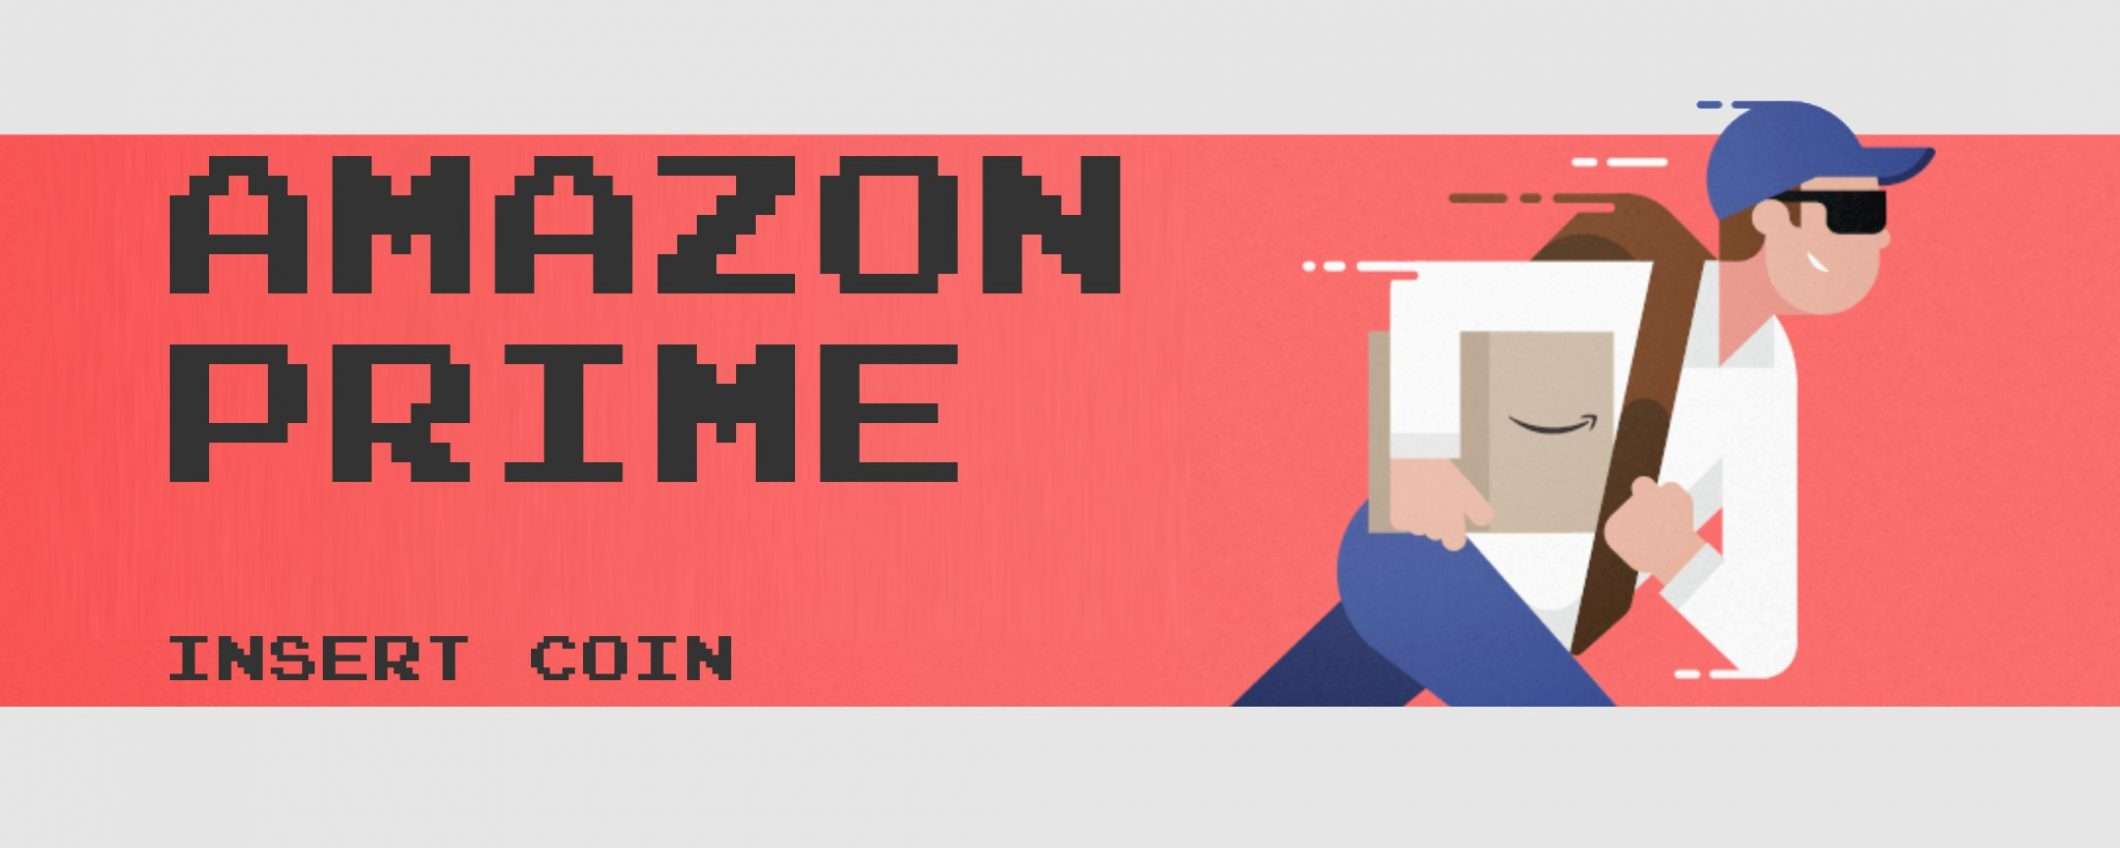 Amazon Prime Day: tutto inizia con un abbonamento